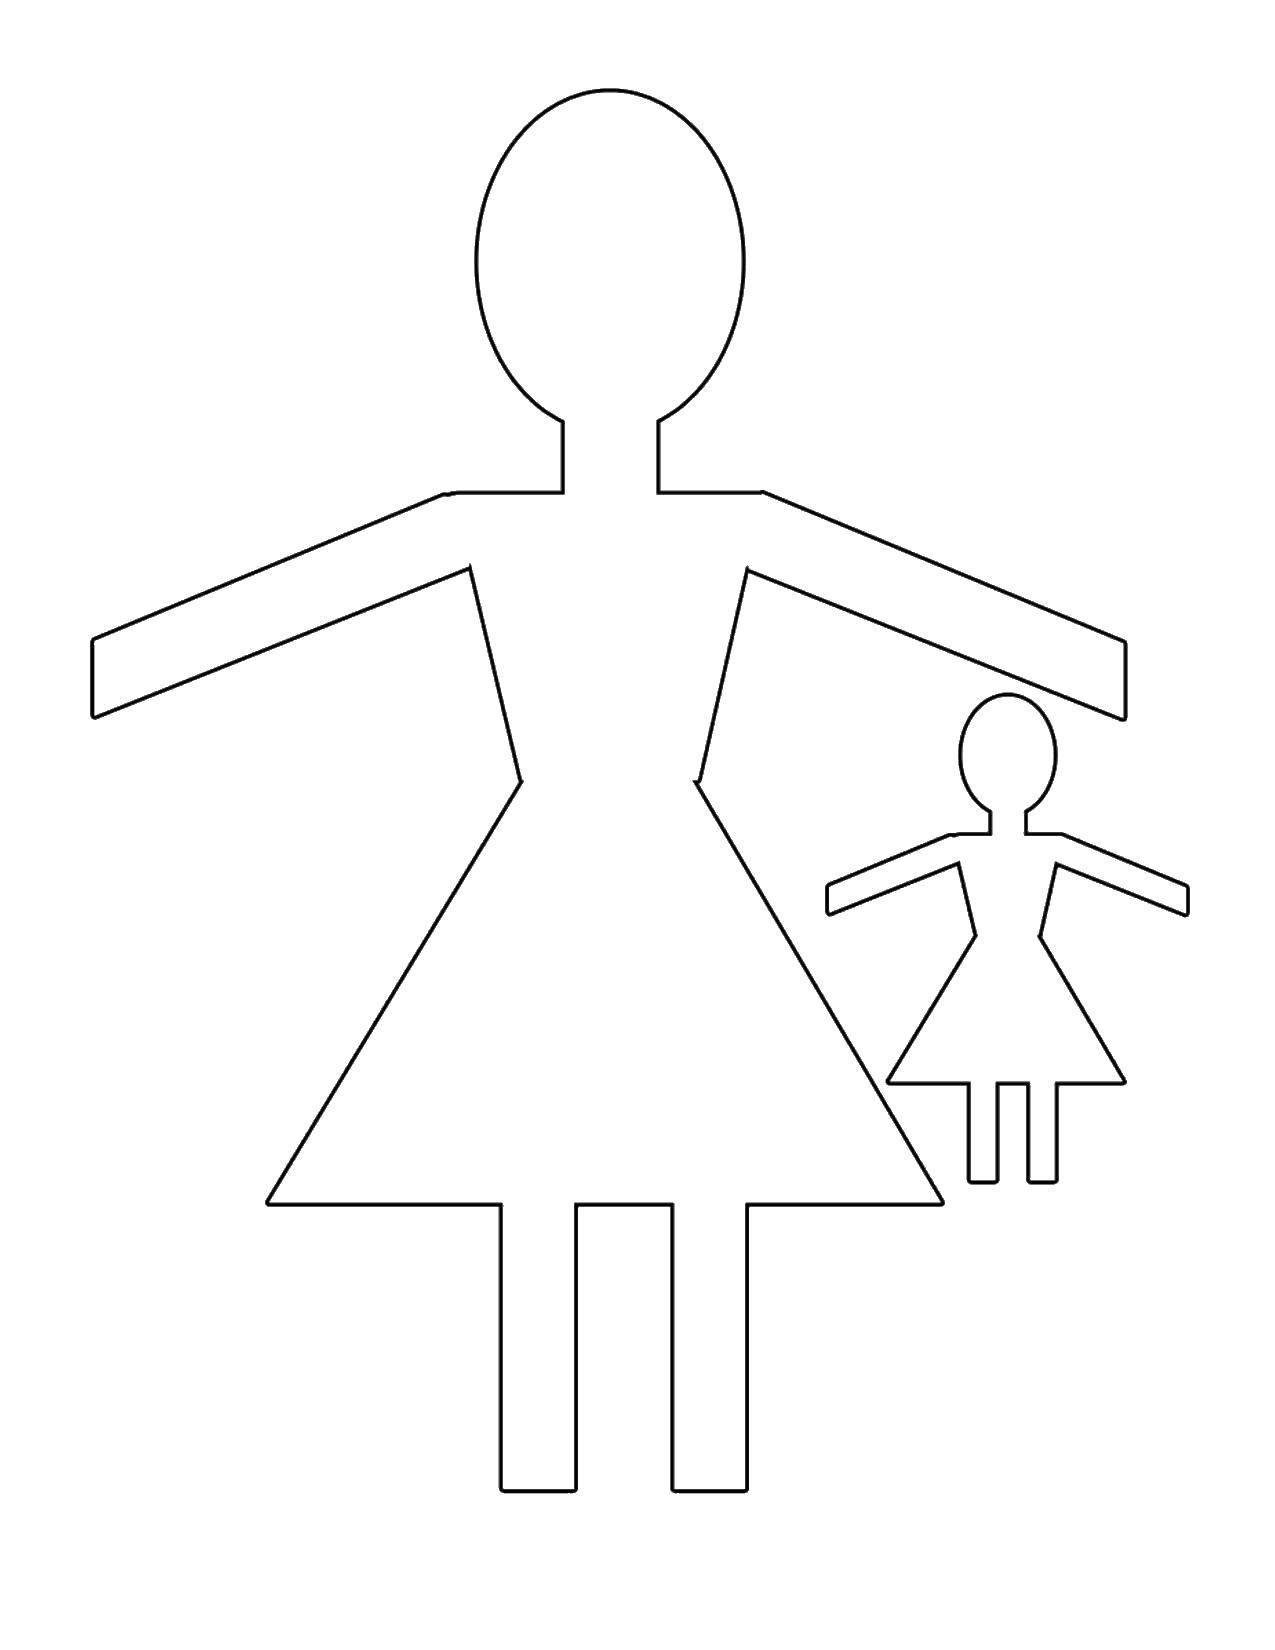 Название: Раскраска Контур кукол. Категория: Контур куклы. Теги: контур, кукла, юбка.